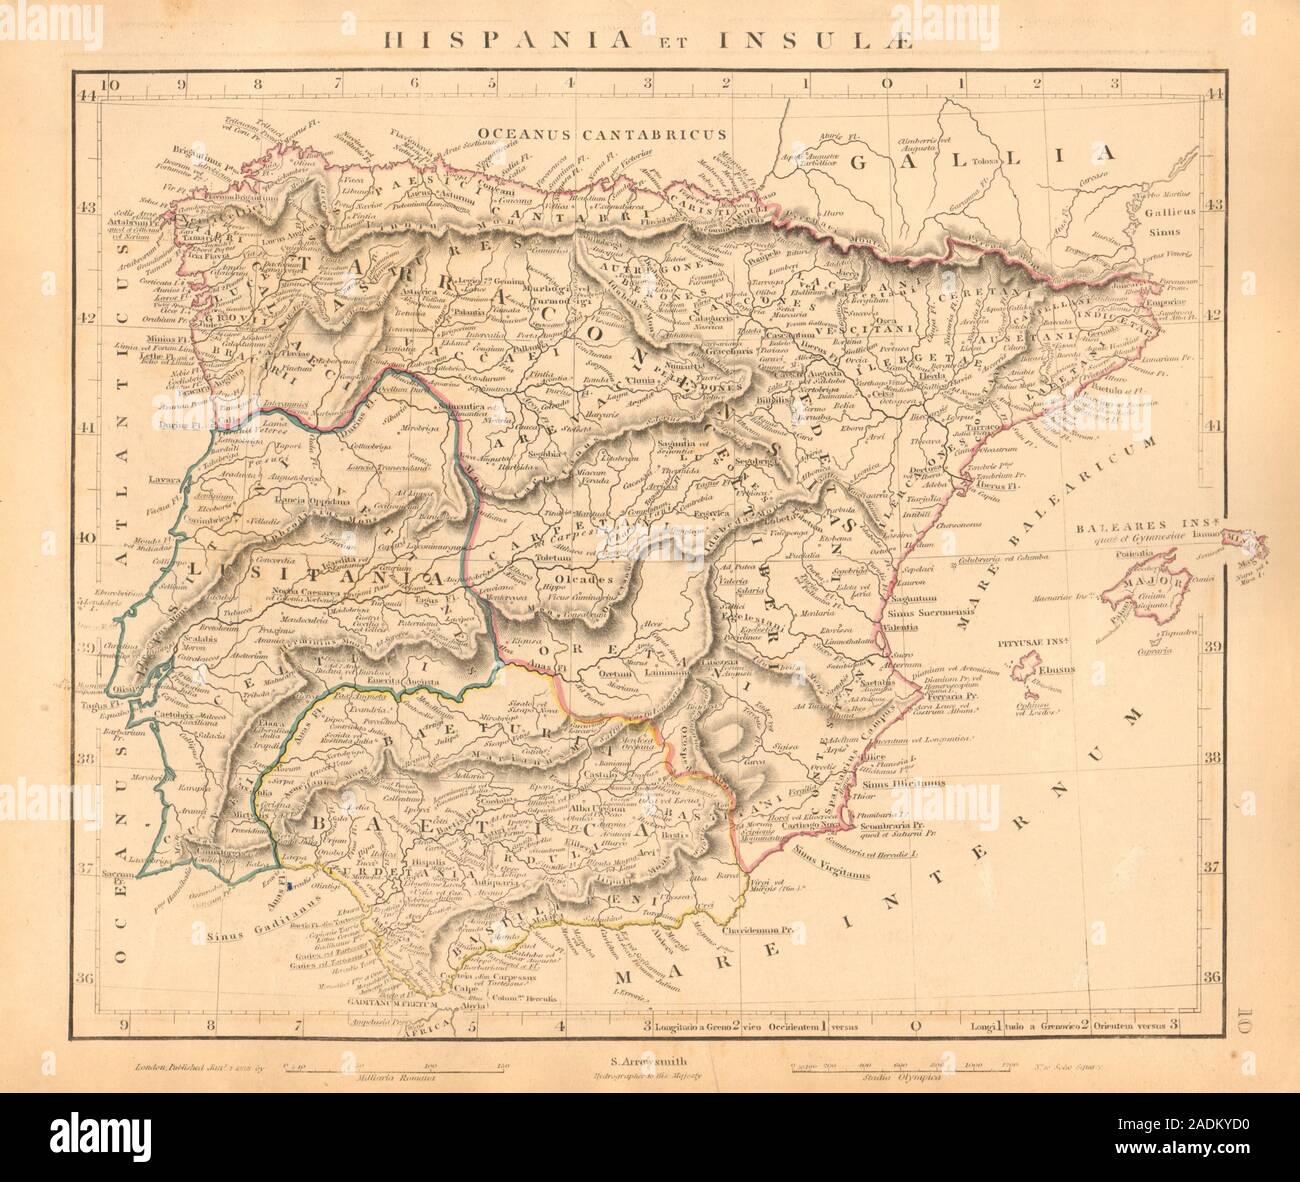 Antico romano Iberia. Hispania & insulae. Spagna Portogallo. ARROWSMITH 1828 mappa Foto Stock